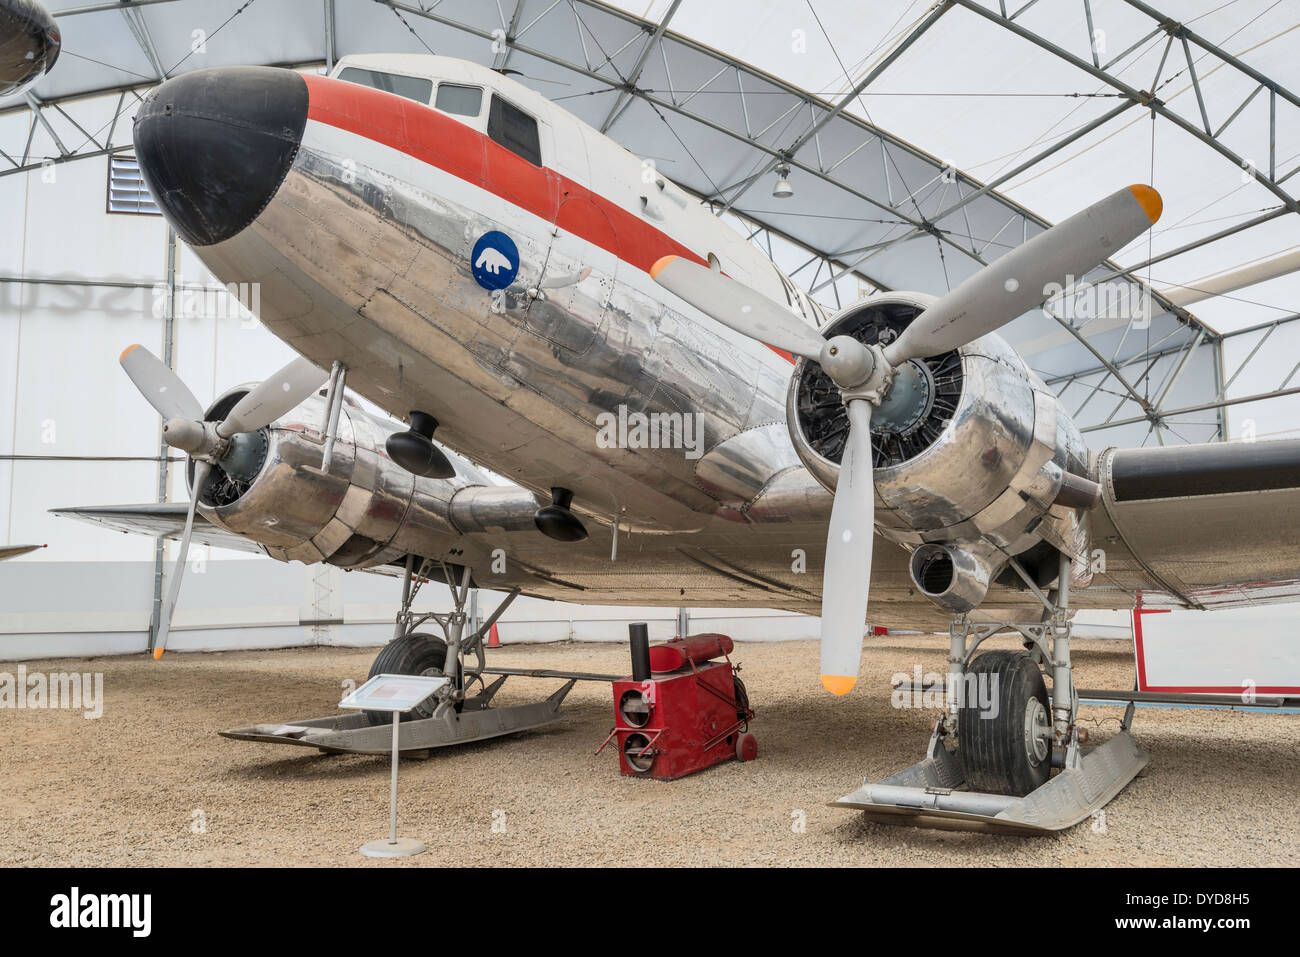 Douglas DC-3 Dakota airliner, Tent Hangar at Aero Space Museum, Calgary, Alberta, Canada Stock Photo